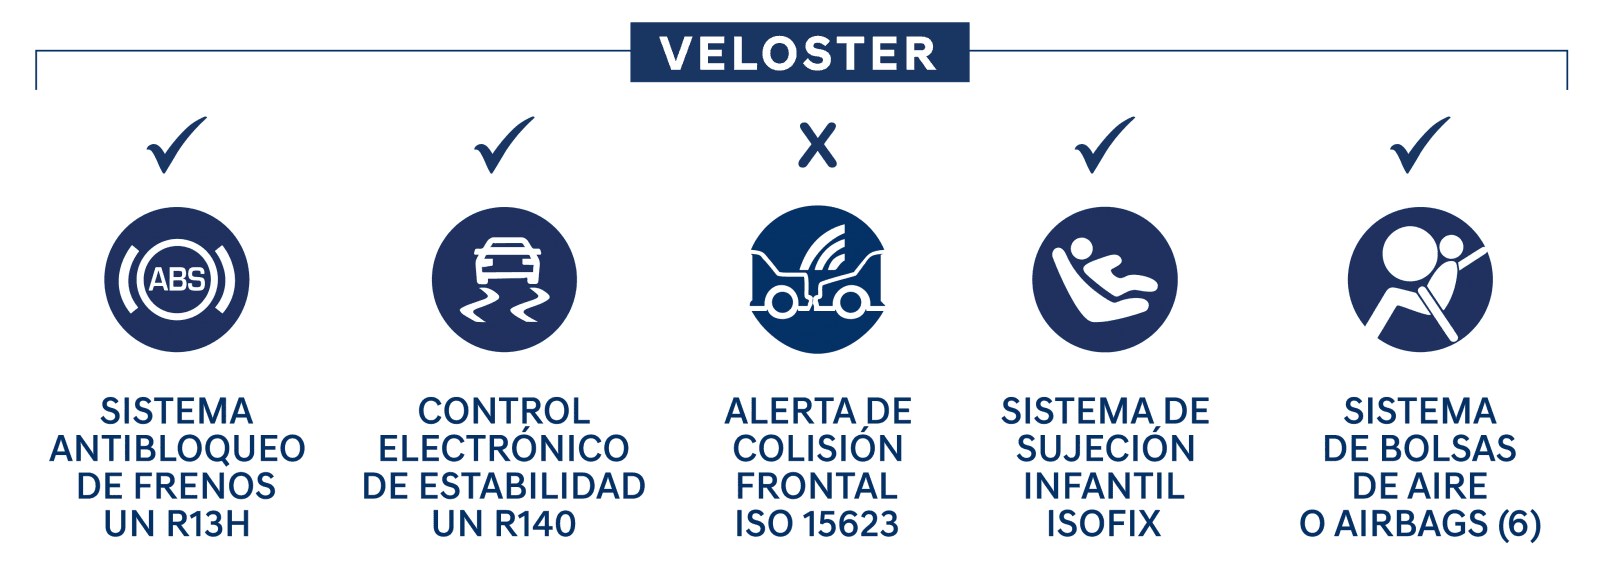 Legal Veloster